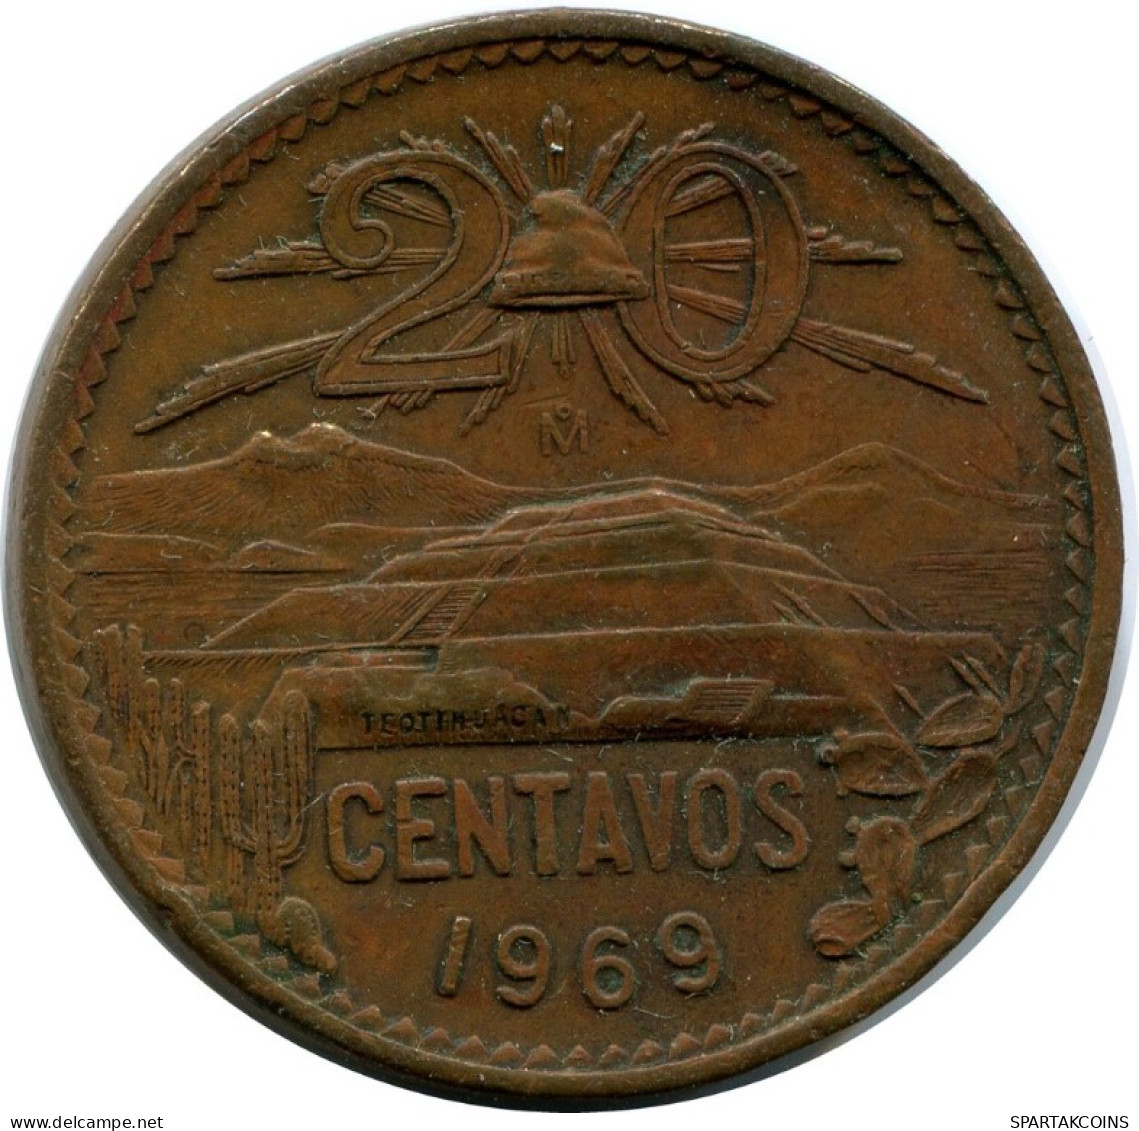 20 CENTAVOS 1969 MEXICO Coin #AH533.5.U.A - Messico